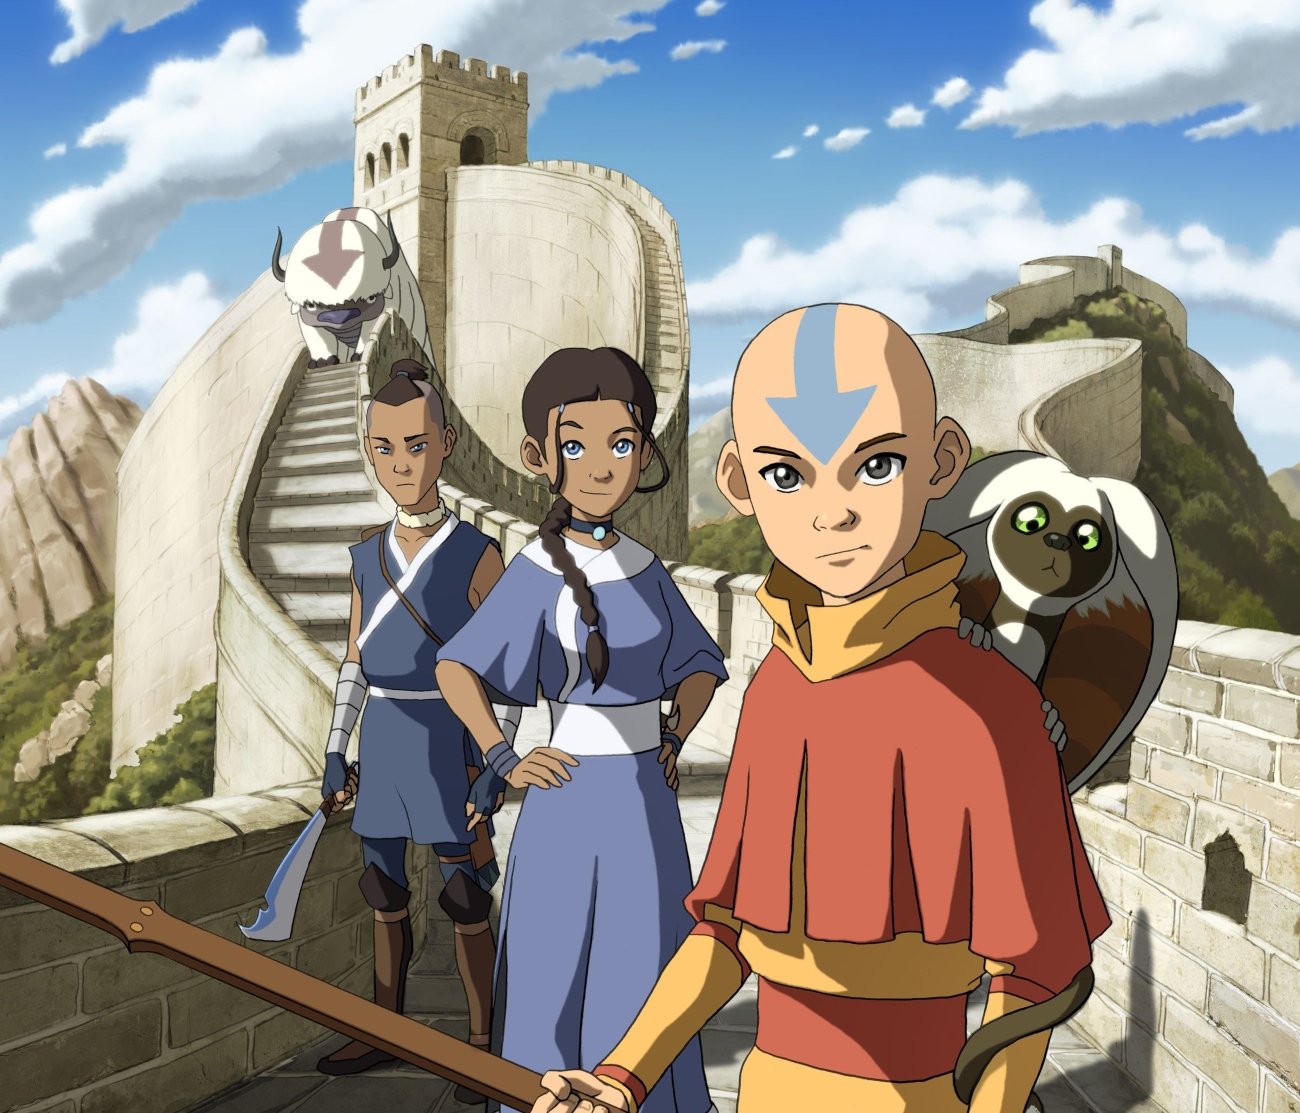 Avatar: The Last Airbender characters Aang, Katara, and Sokka will be leaving Netflix